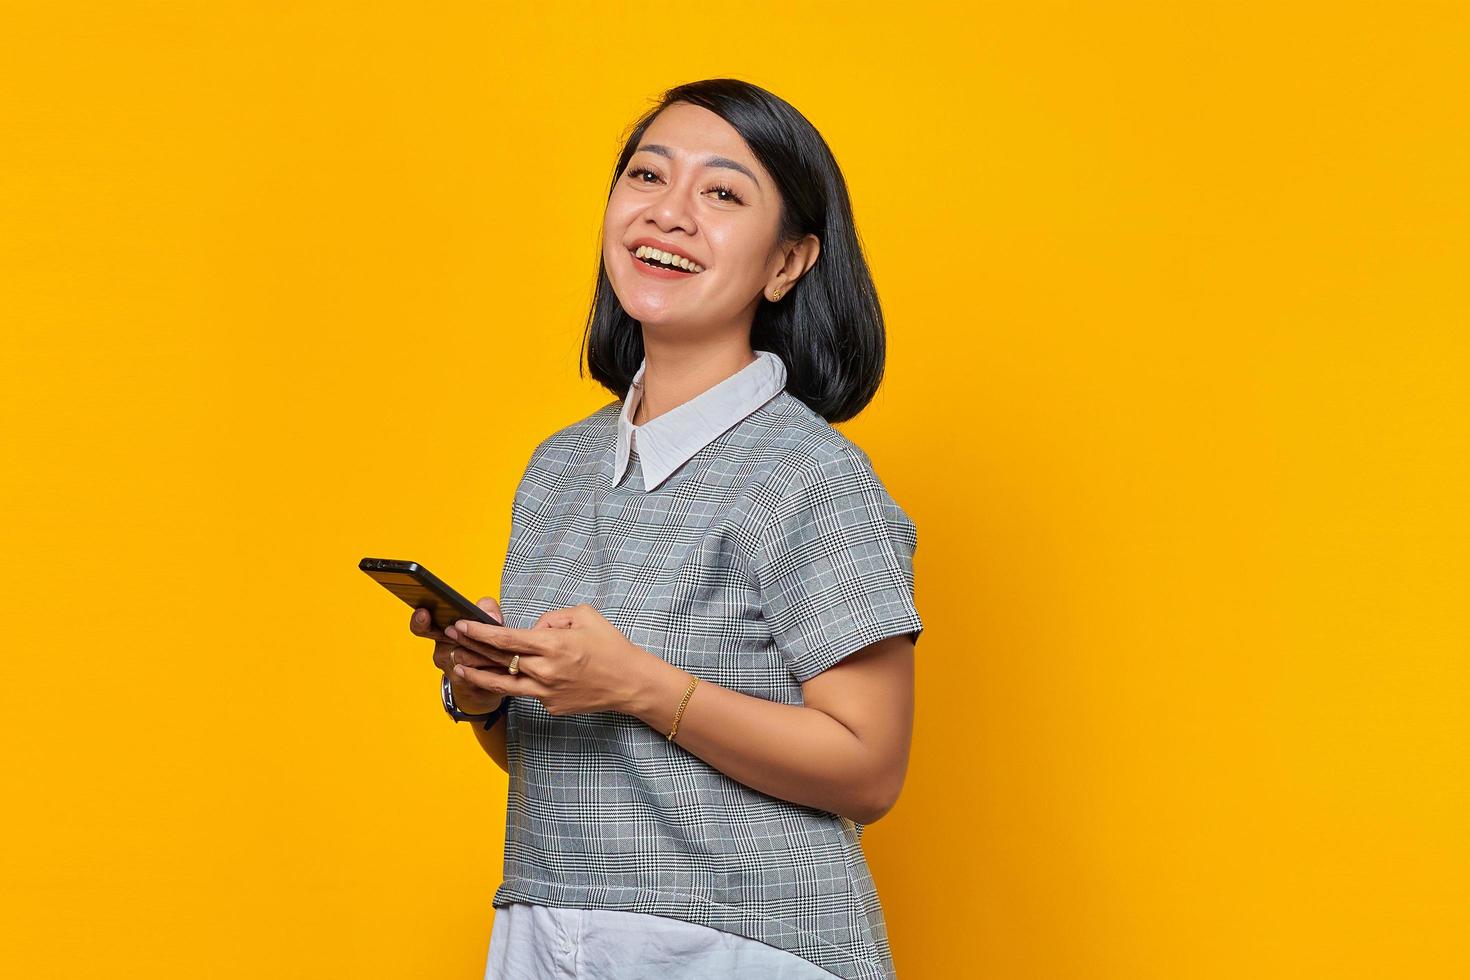 retrato de uma jovem asiática alegre segurando um smartphone enquanto olha para a câmera em fundo amarelo foto